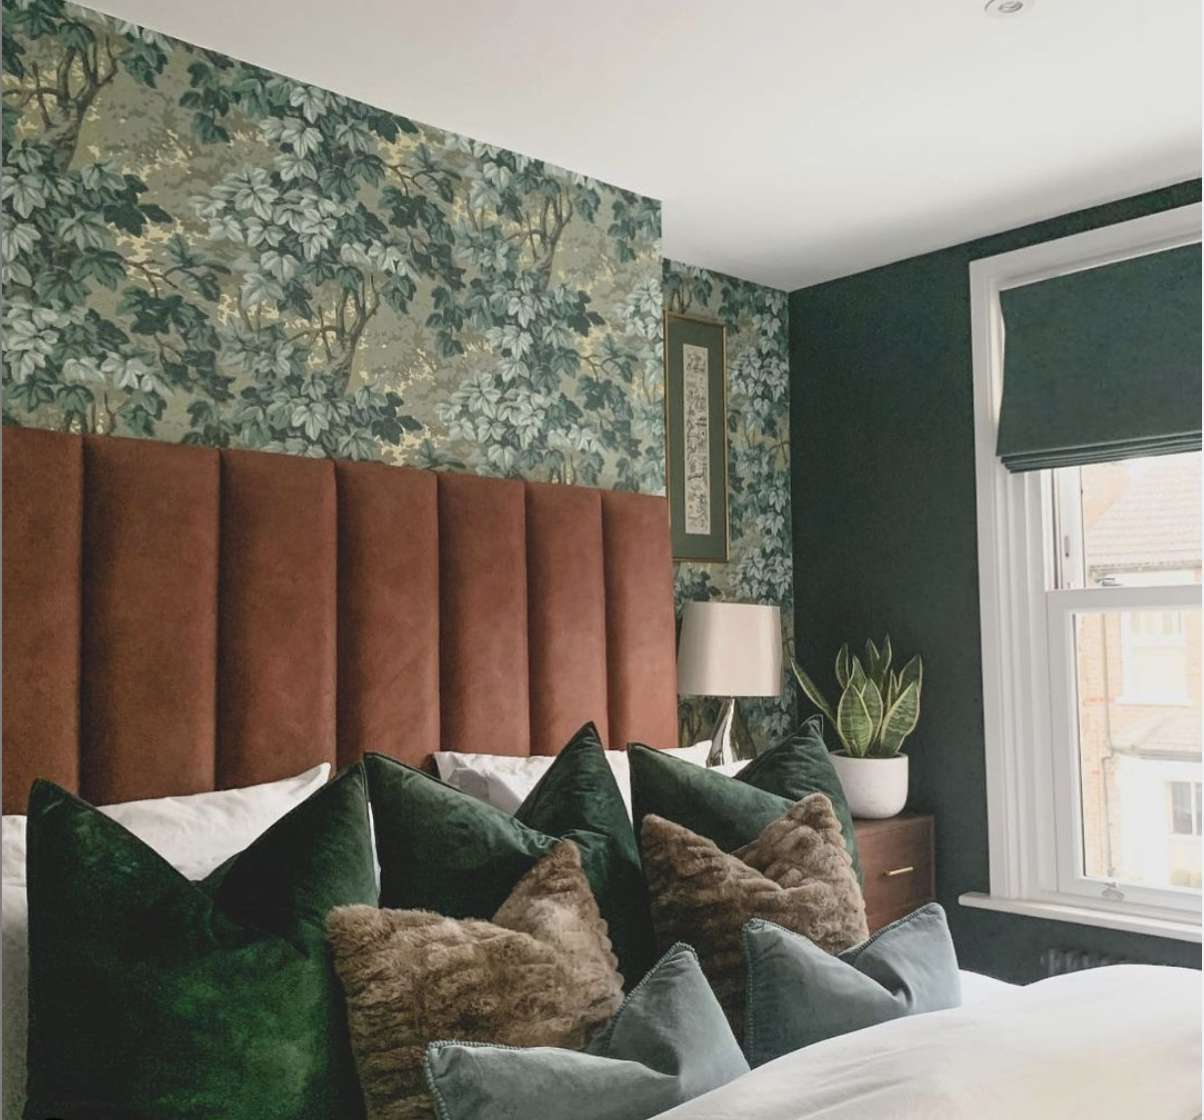 quarto com cabeceira de almofada vermelho-alaranjado queimado, papel de parede floral azul-esverdeado, almofadas verdes e azuis na cama, planta cobra no canto